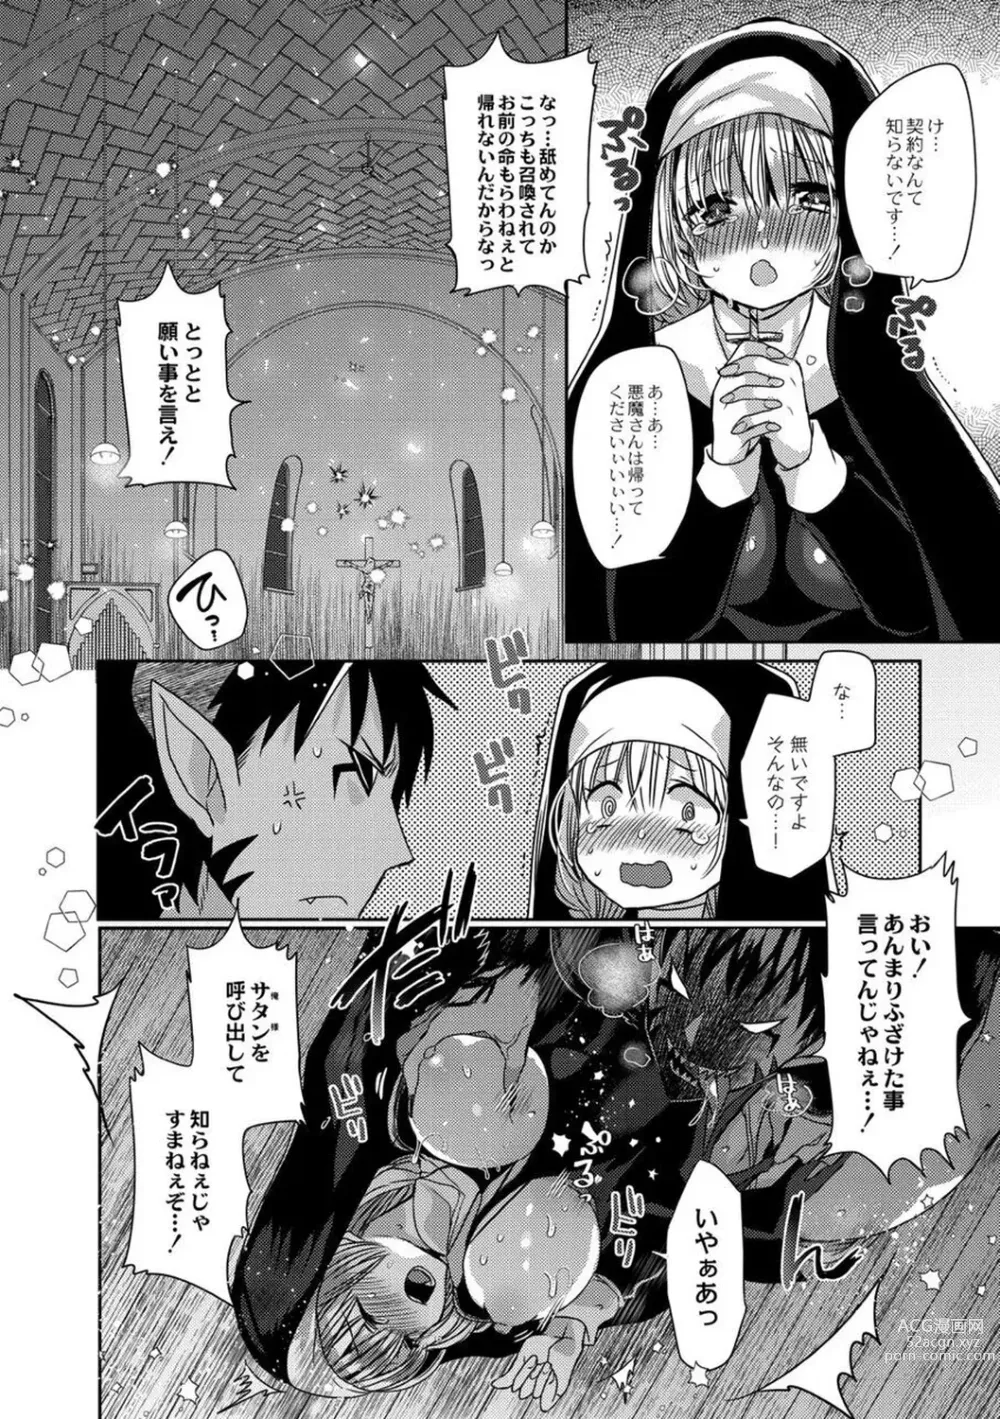 Page 12 of manga Junai Holic